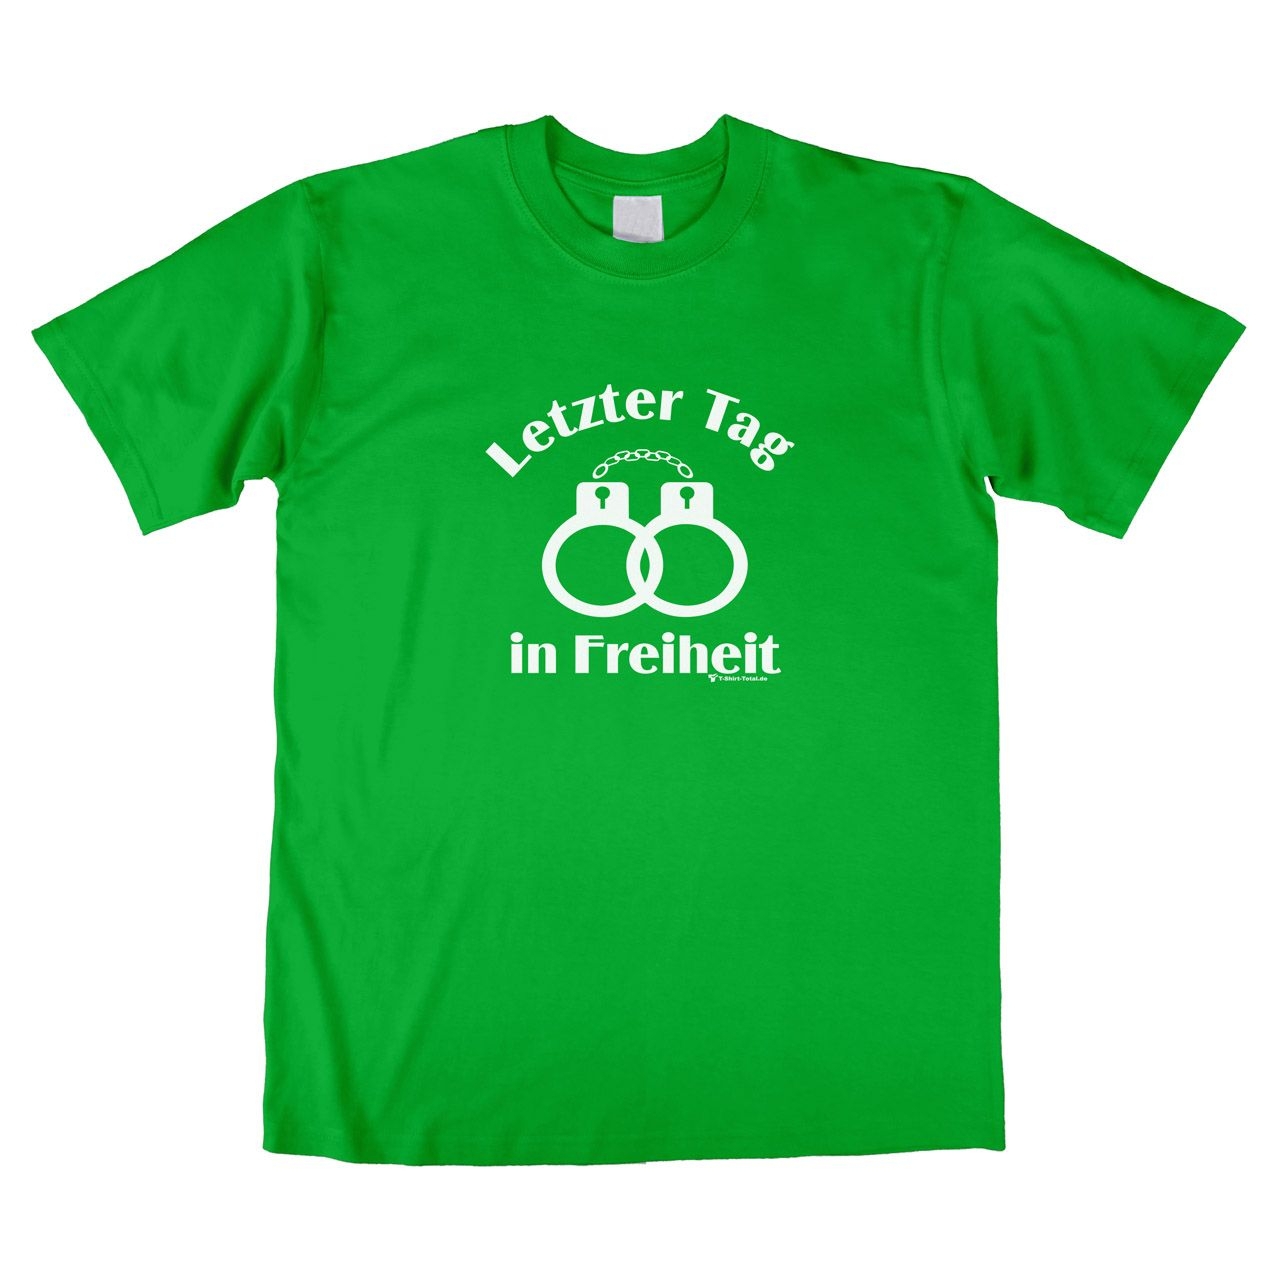 Letzter Tag in Freiheit Unisex T-Shirt grün Extra Large